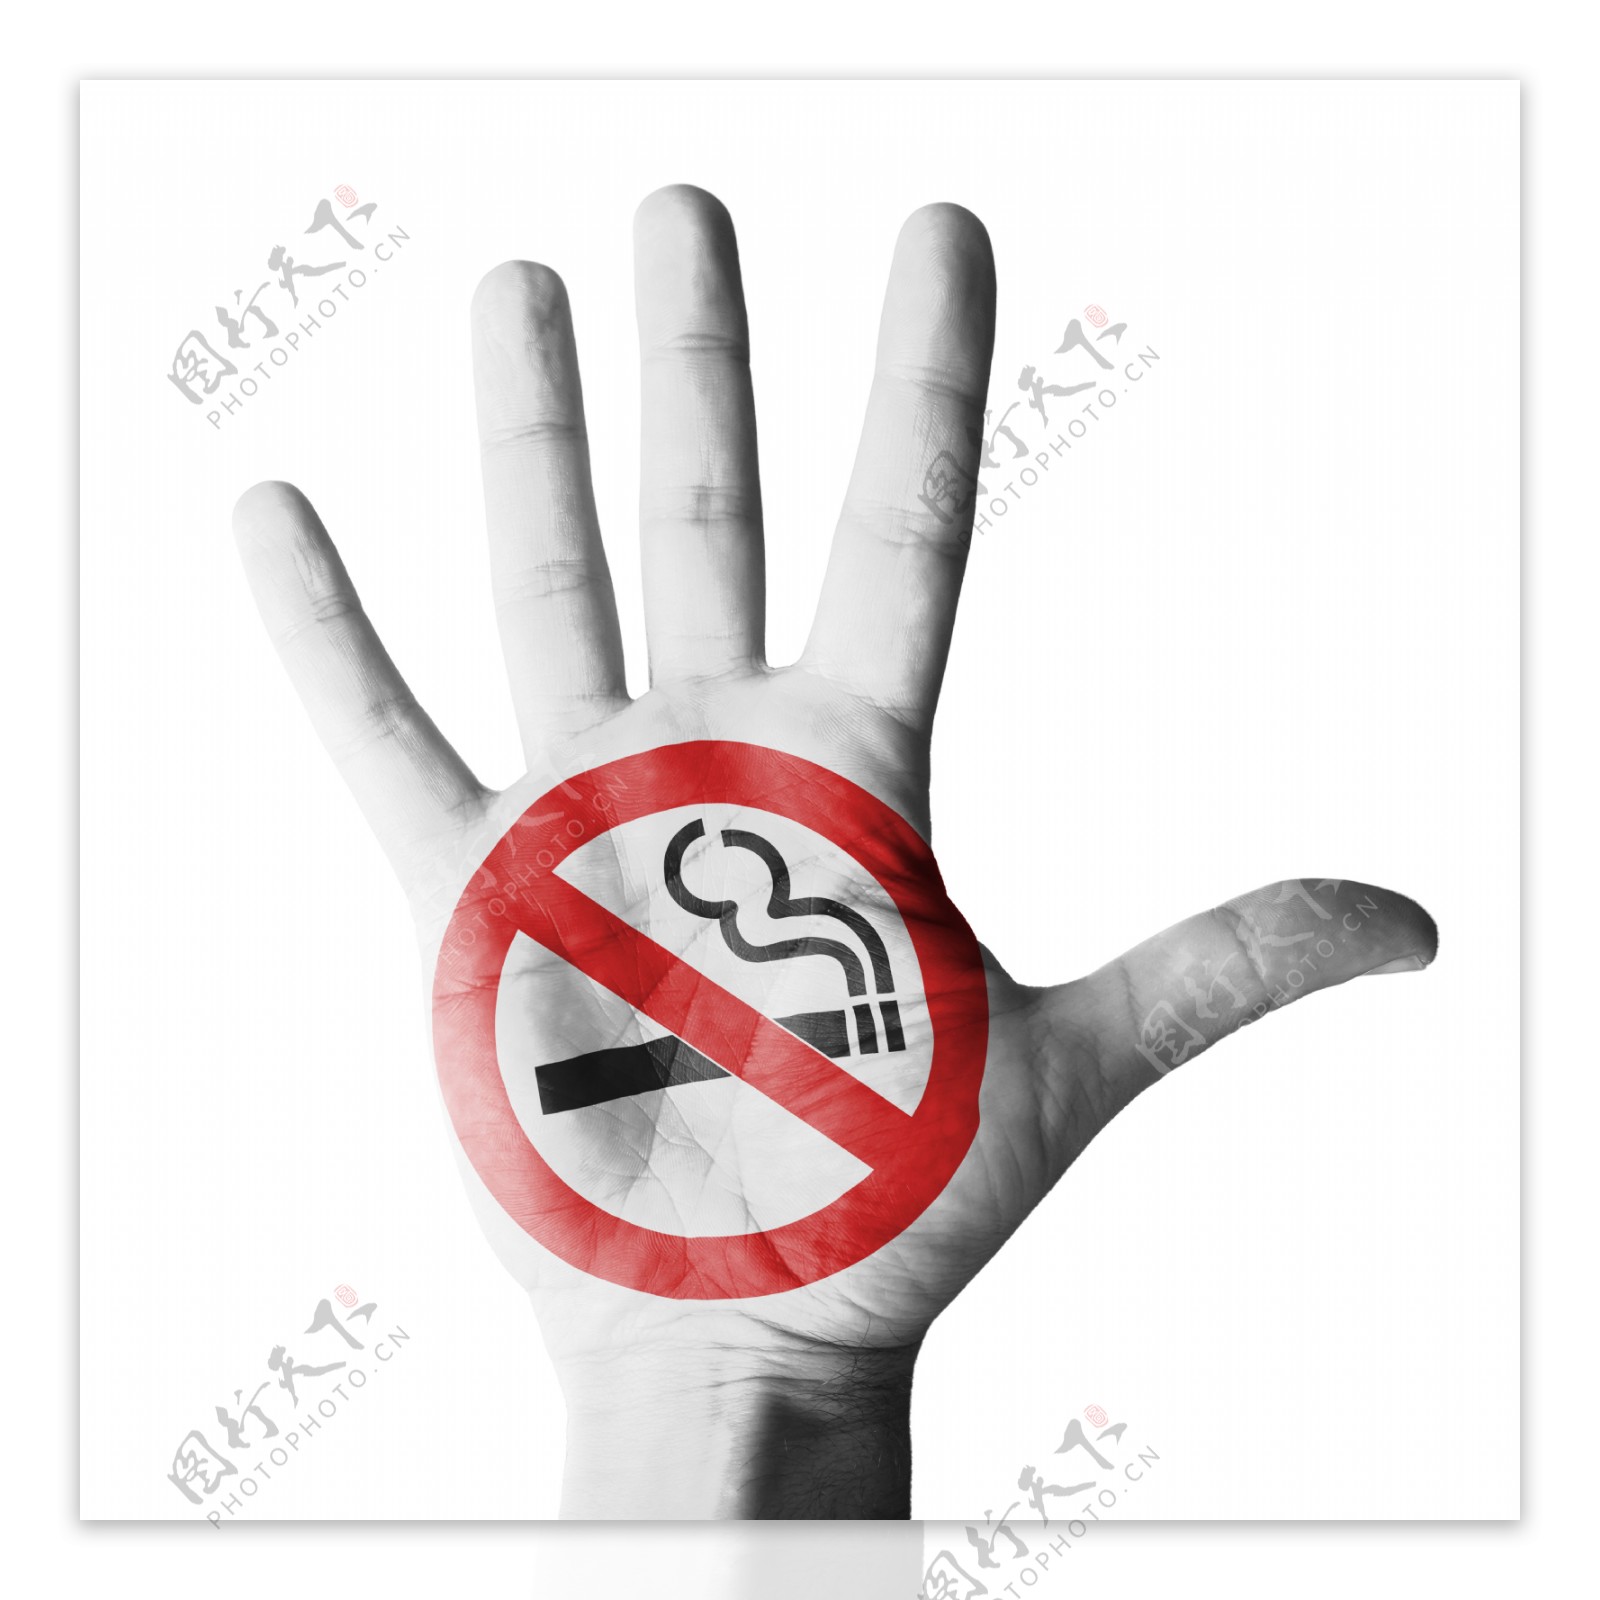 禁烟标识手势图片